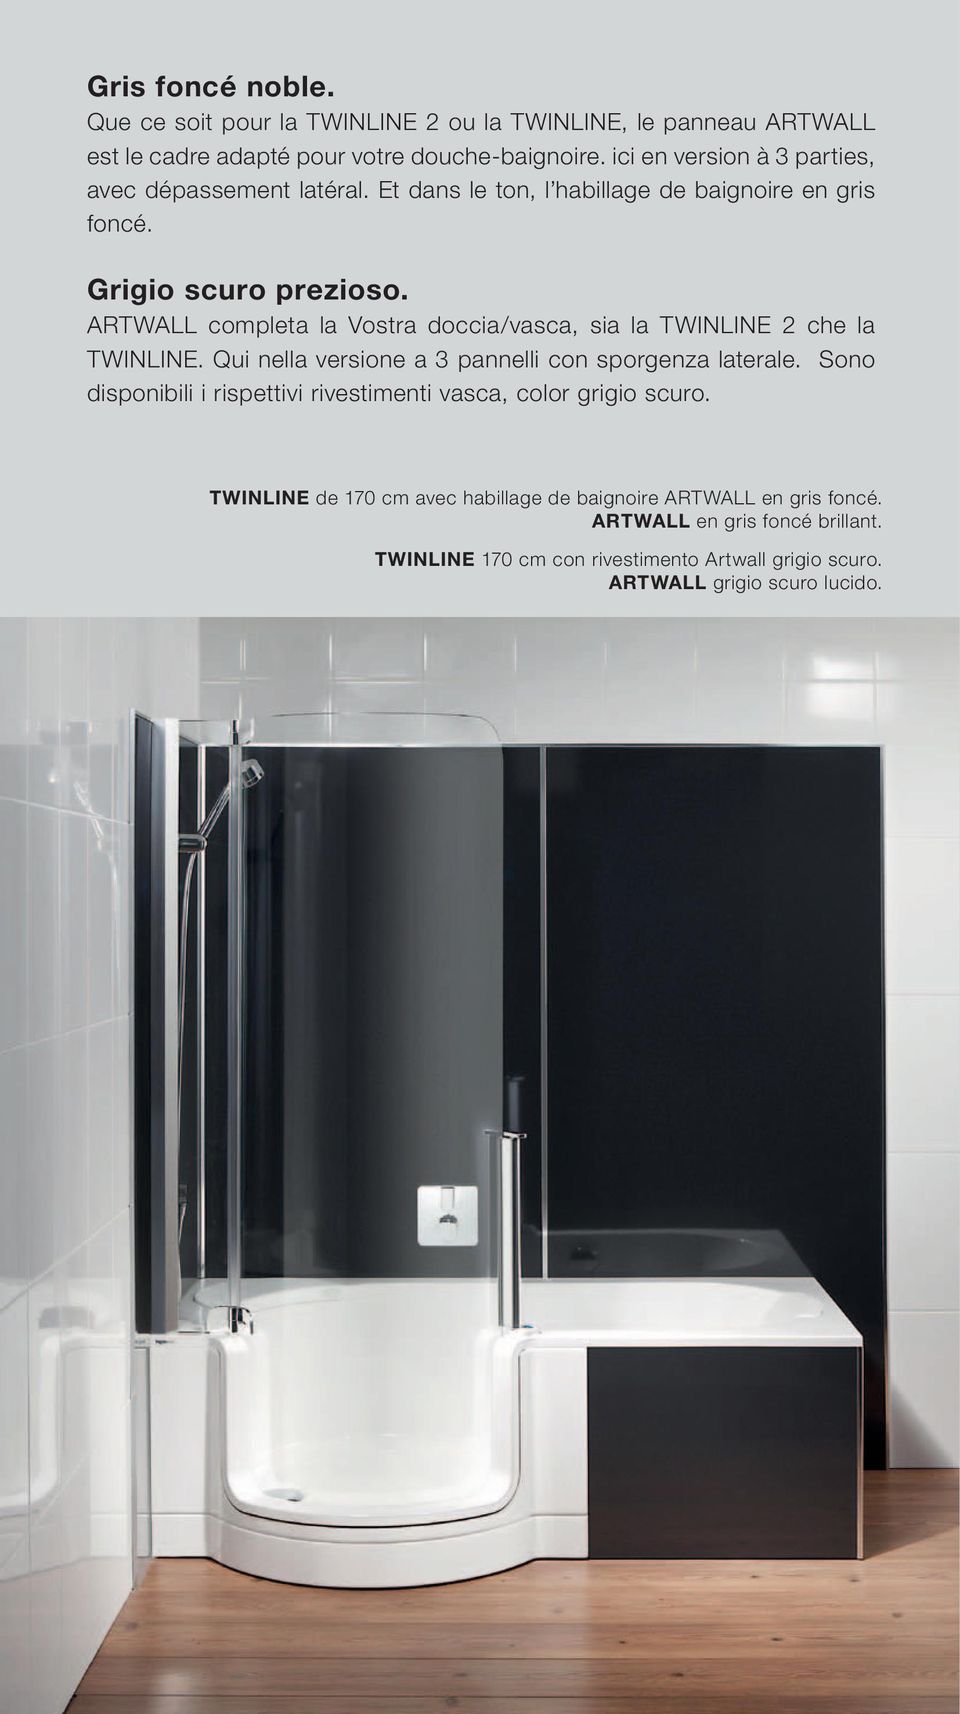 ARTWALL completa la Vostra doccia/vasca, sia la TWINLINE 2 che la TWINLINE. Qui nella versione a 3 pannelli con sporgenza laterale.